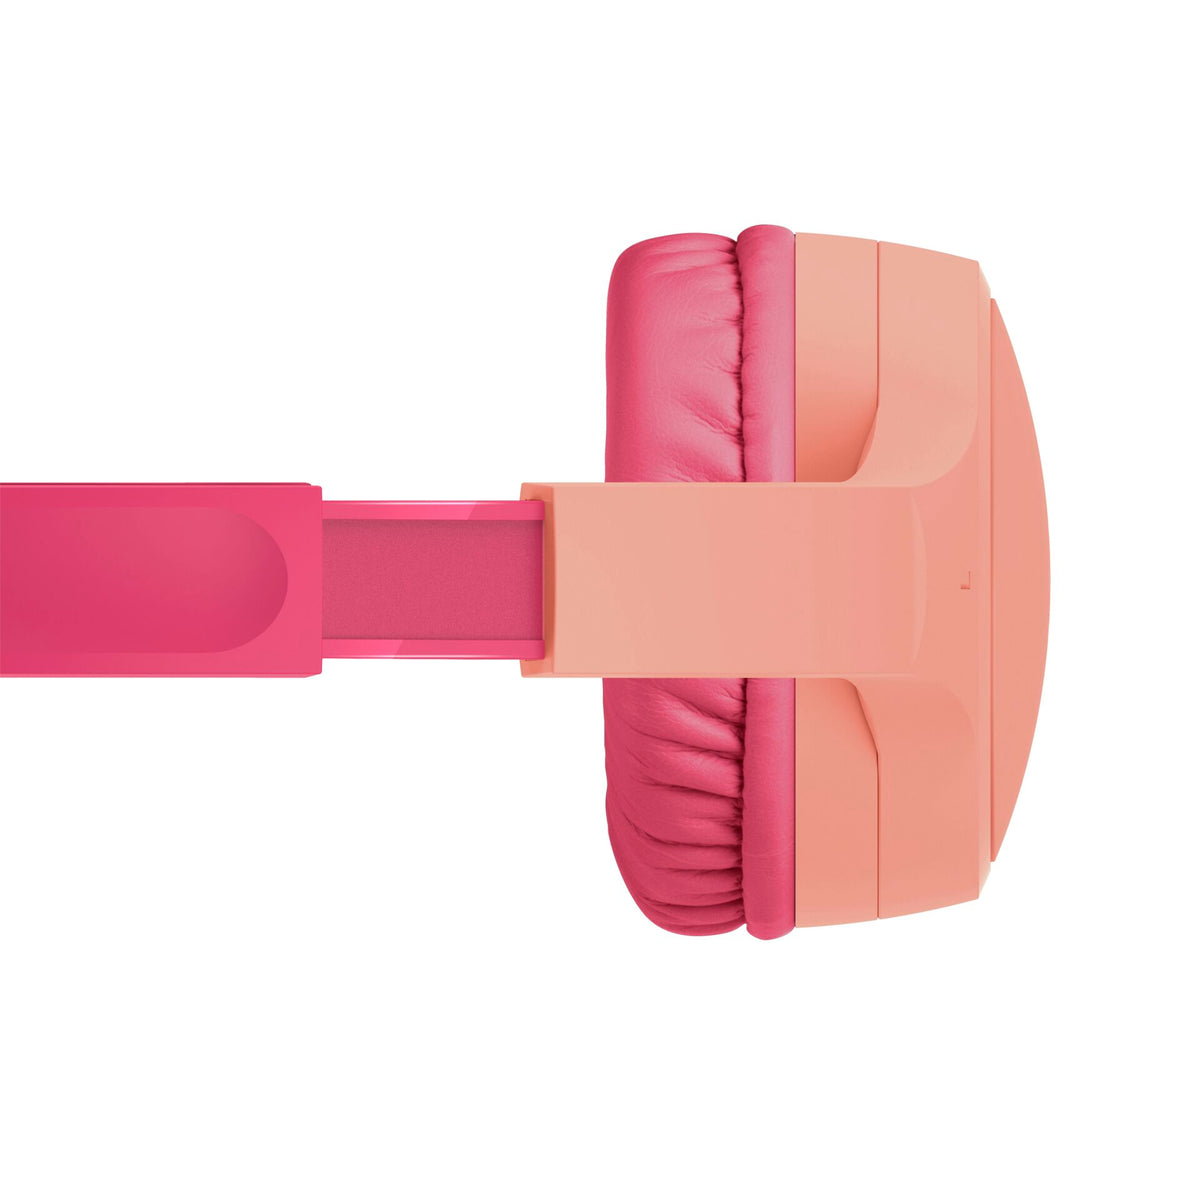 Belkin auriculares inalámbricos supraaurales para niños - Pink